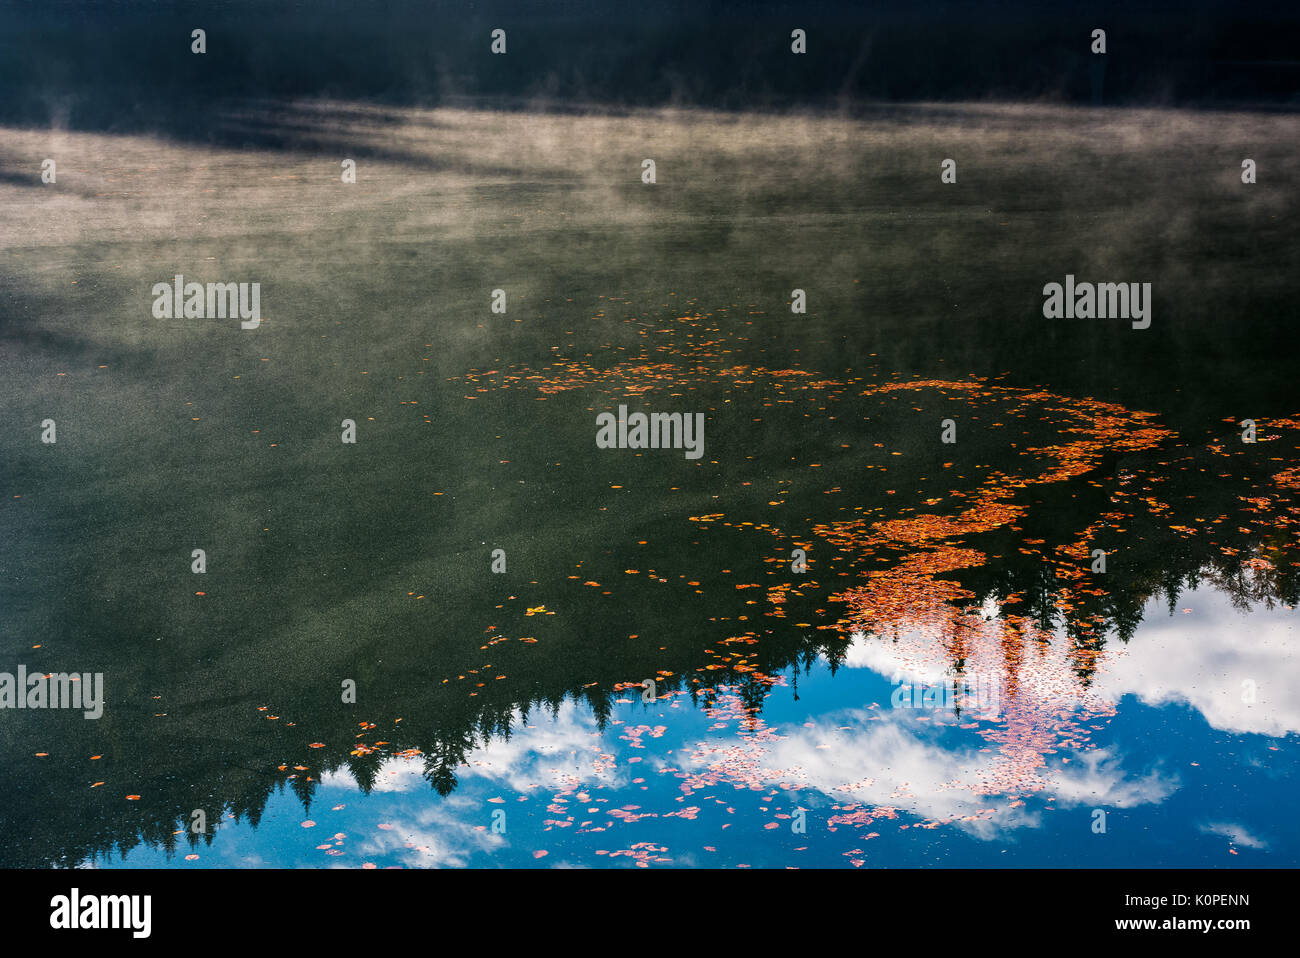 Wunderschöne Natur Hintergrund von Laub auf den nebligen Wasser reflektierende Oberfläche Fichtenwald Stockfoto